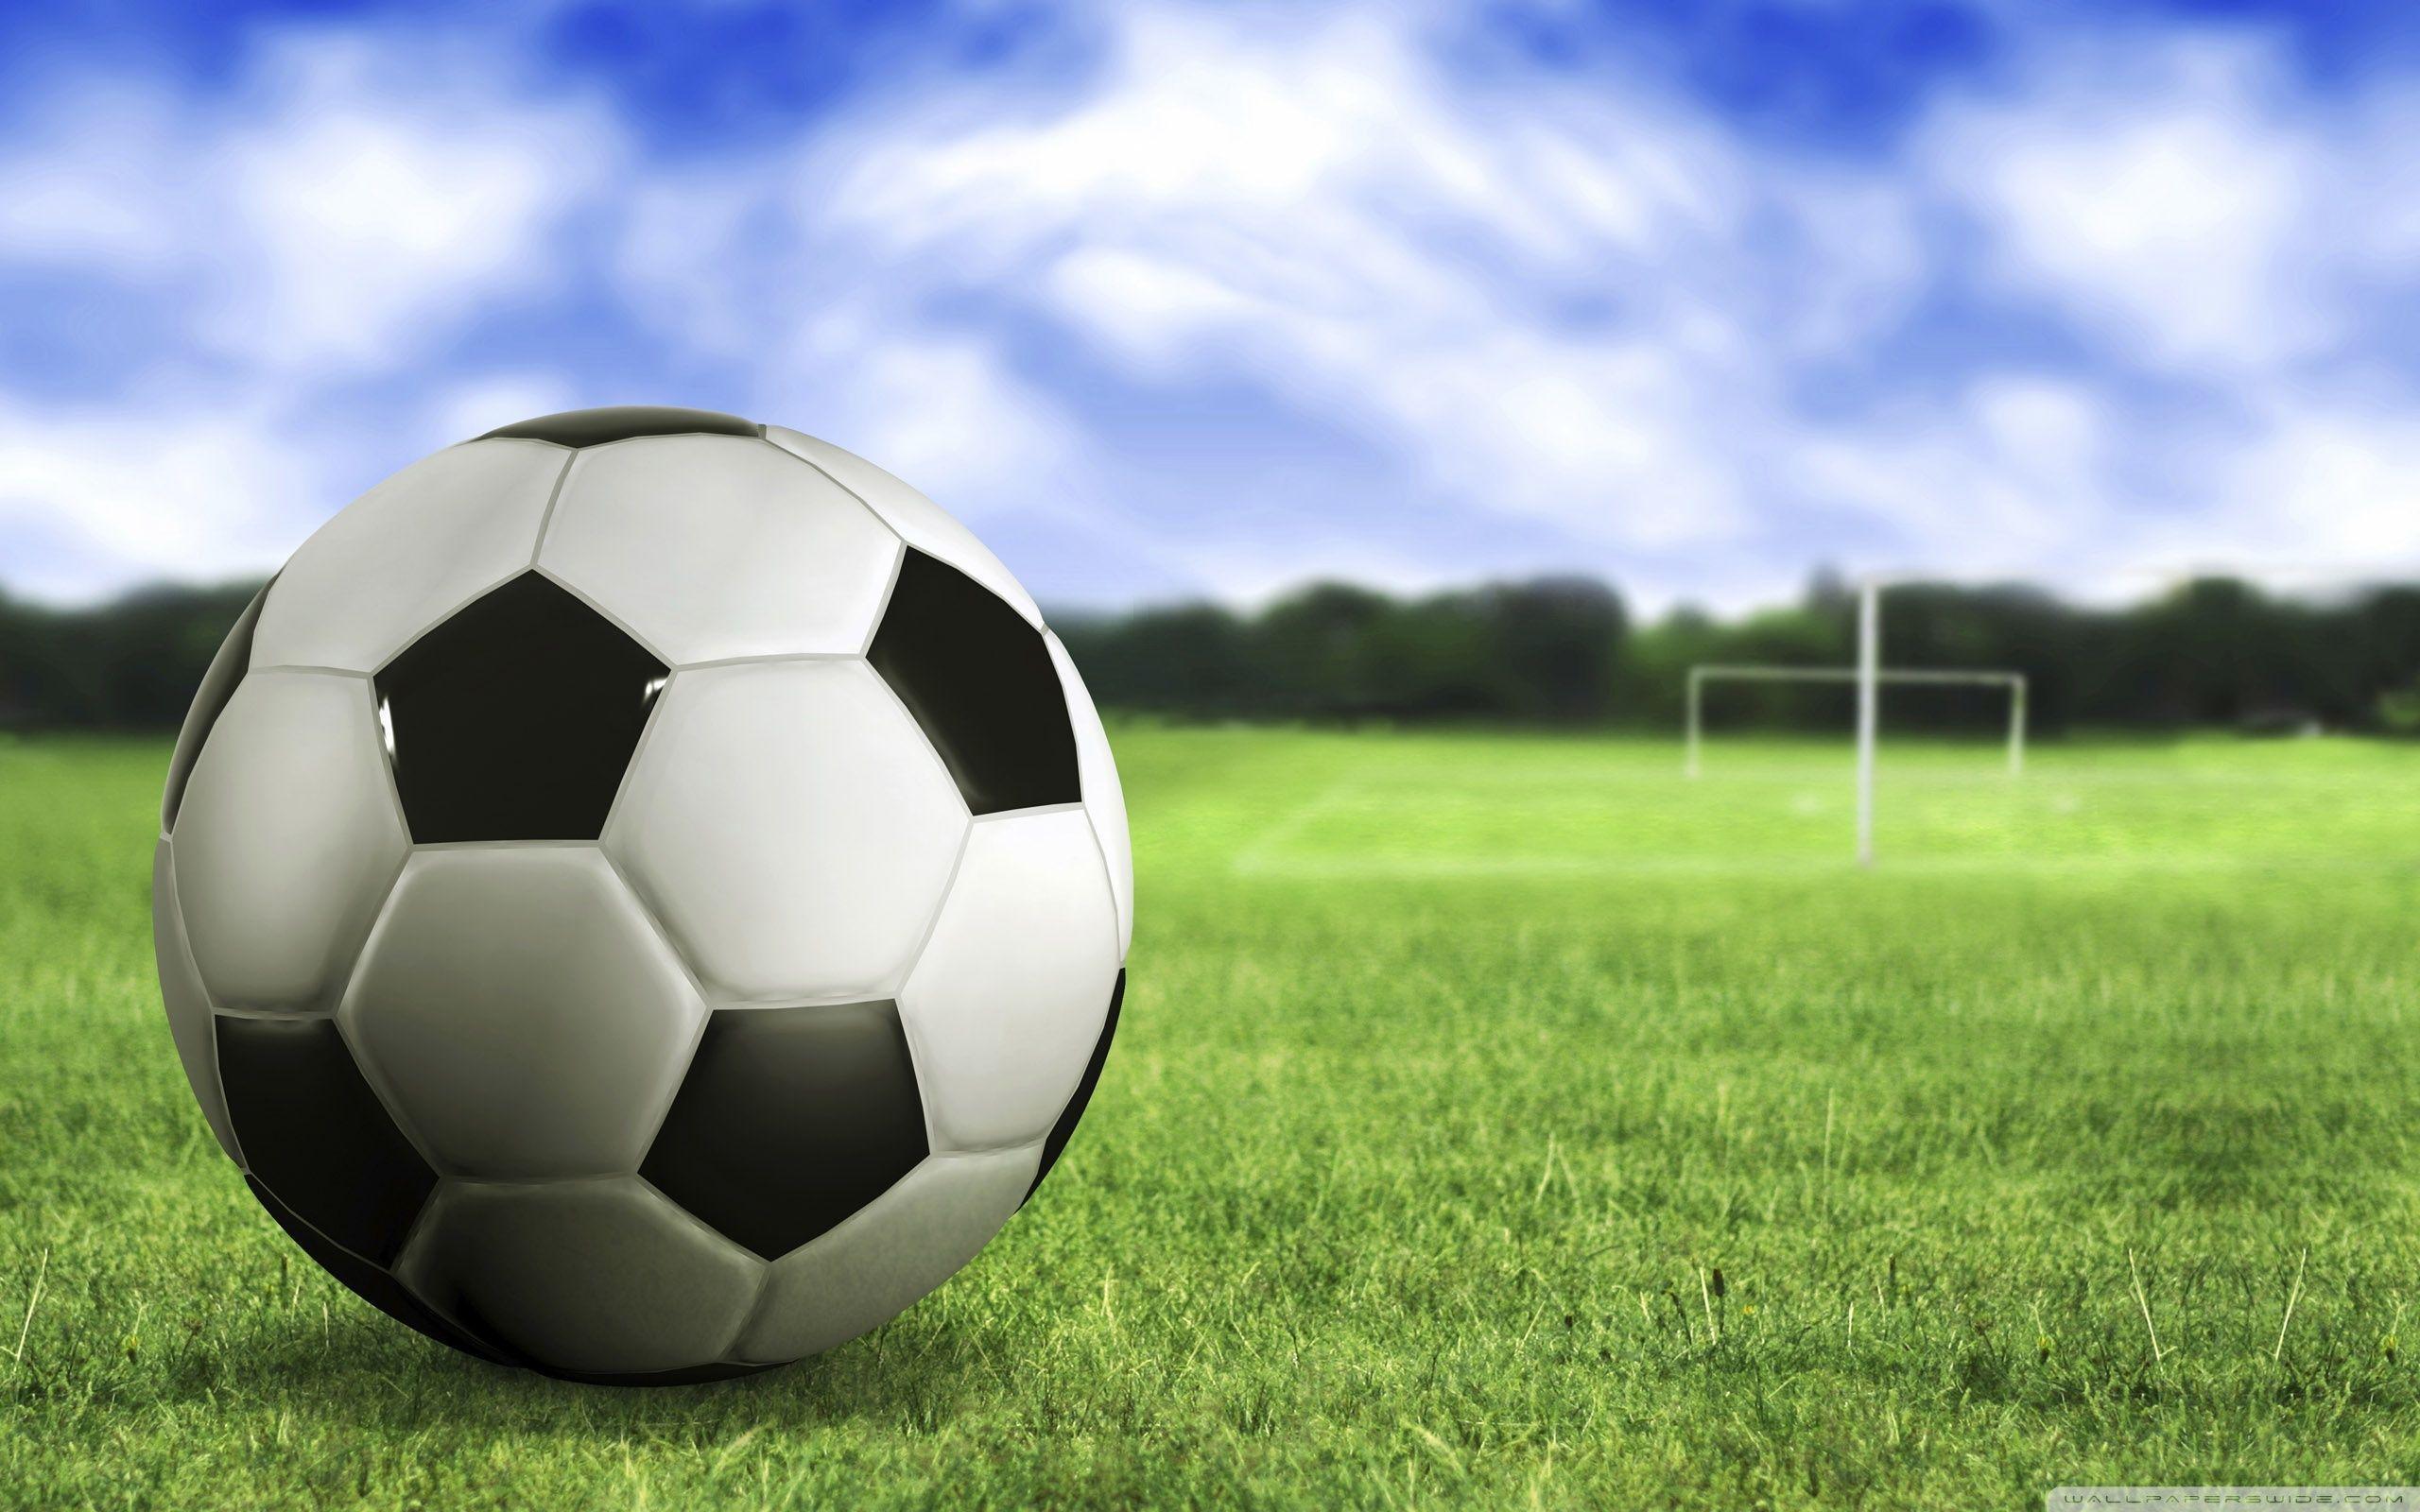 Green grass, Blue sky, Soccer ball, Soccer field wallpaper